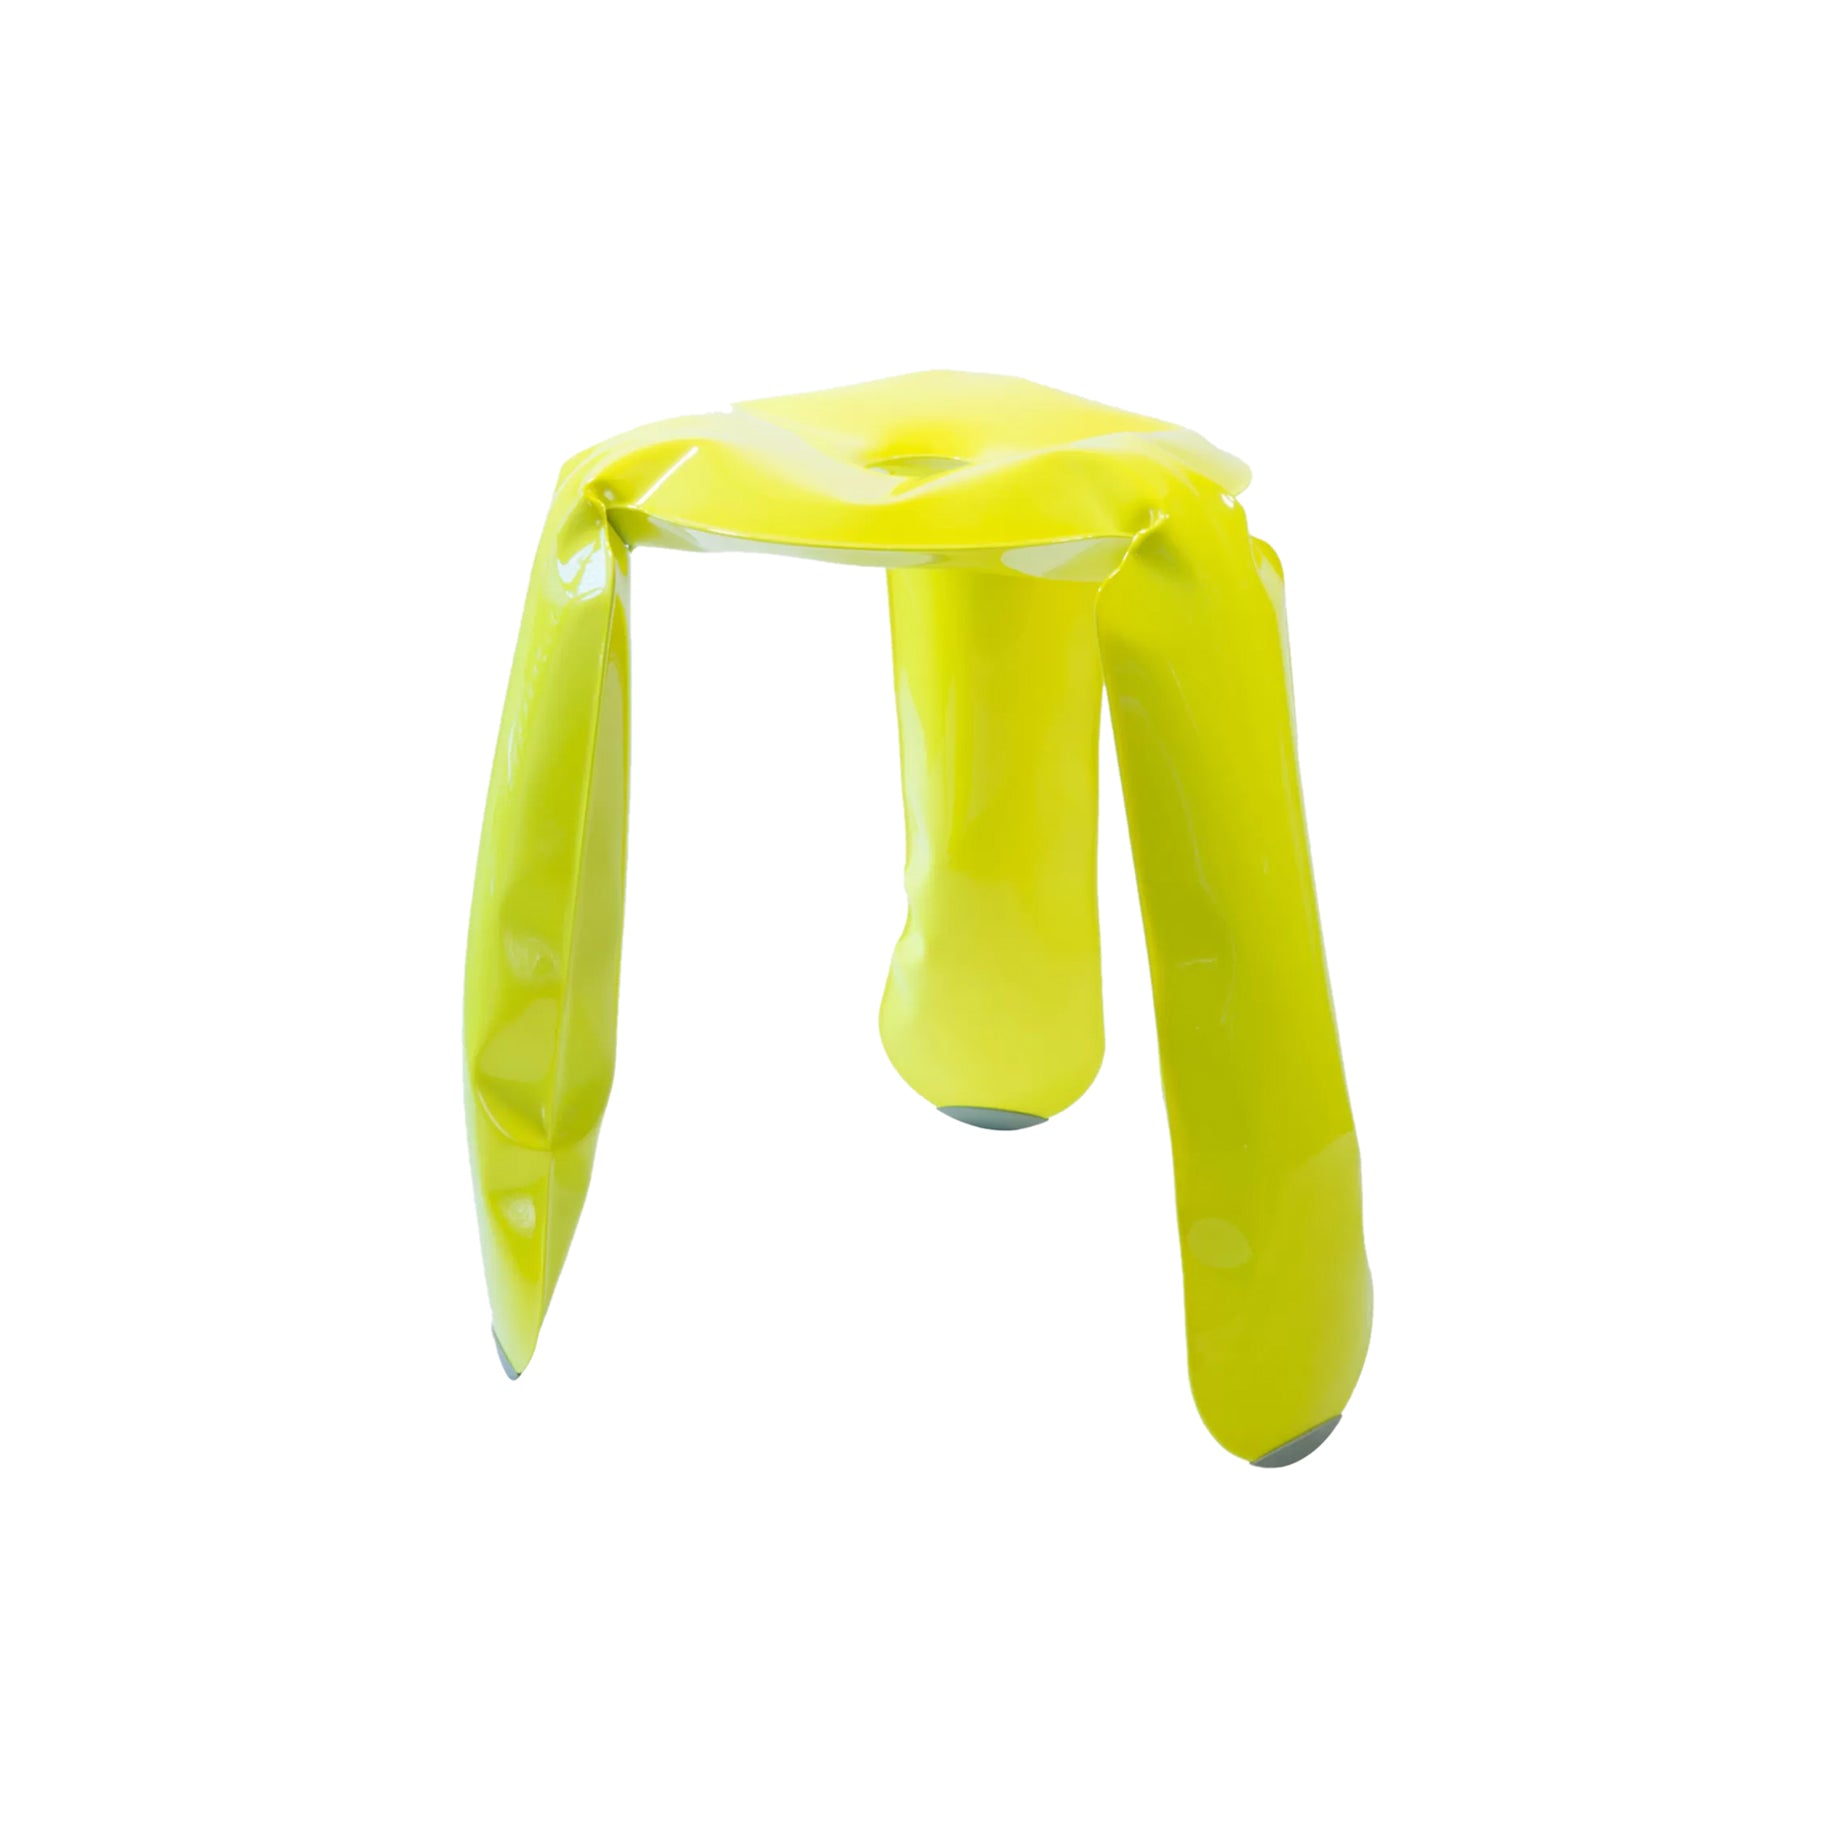 Plopp Standard Stool: Neon Yellow Aluminum